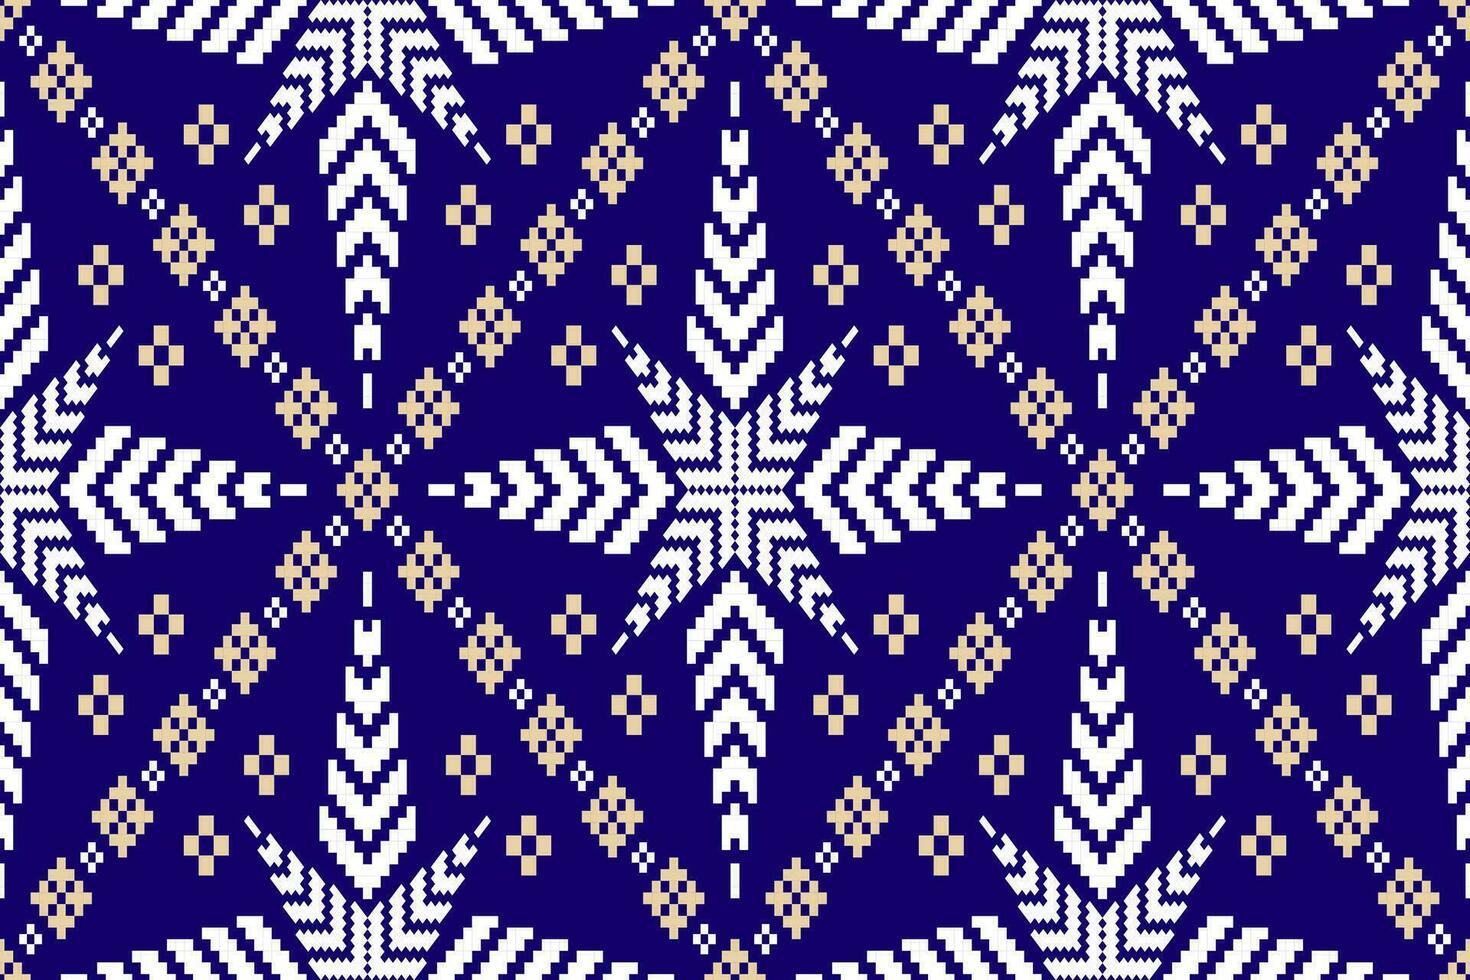 indigo marine bleu géométrique traditionnel ethnique modèle ikat sans couture modèle abstrait conception pour en tissu impression tissu robe tapis rideaux et sarong aztèque africain Indien indonésien vecteur